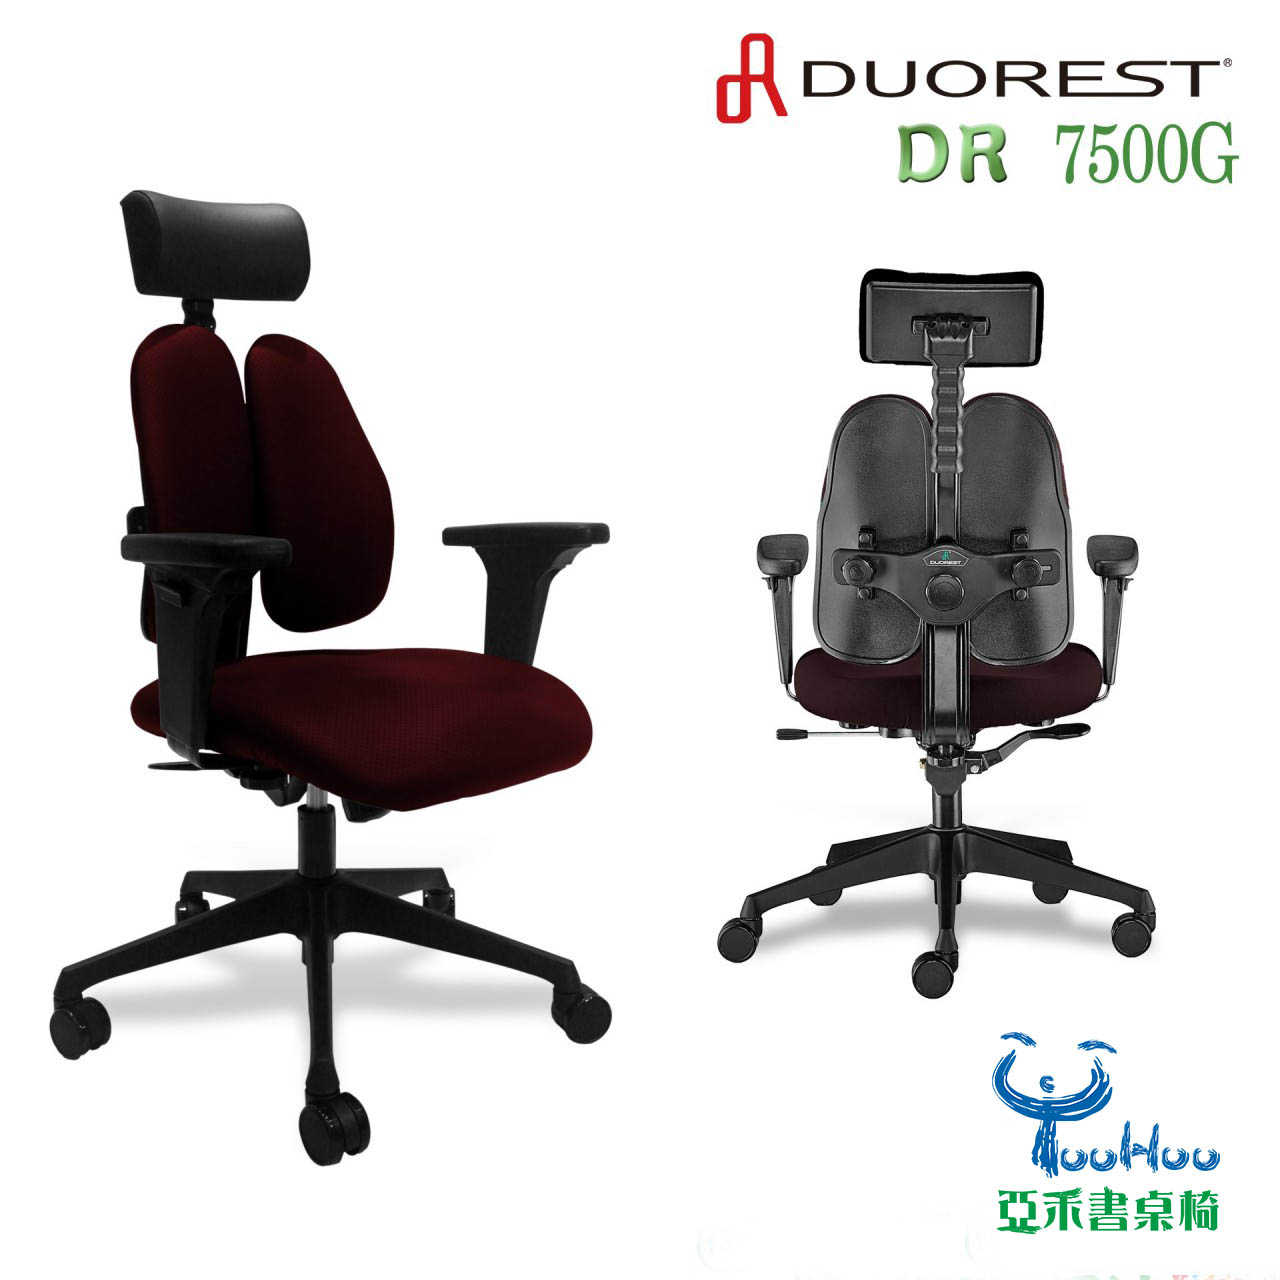 DUOREST-DR 7500G雙背椅